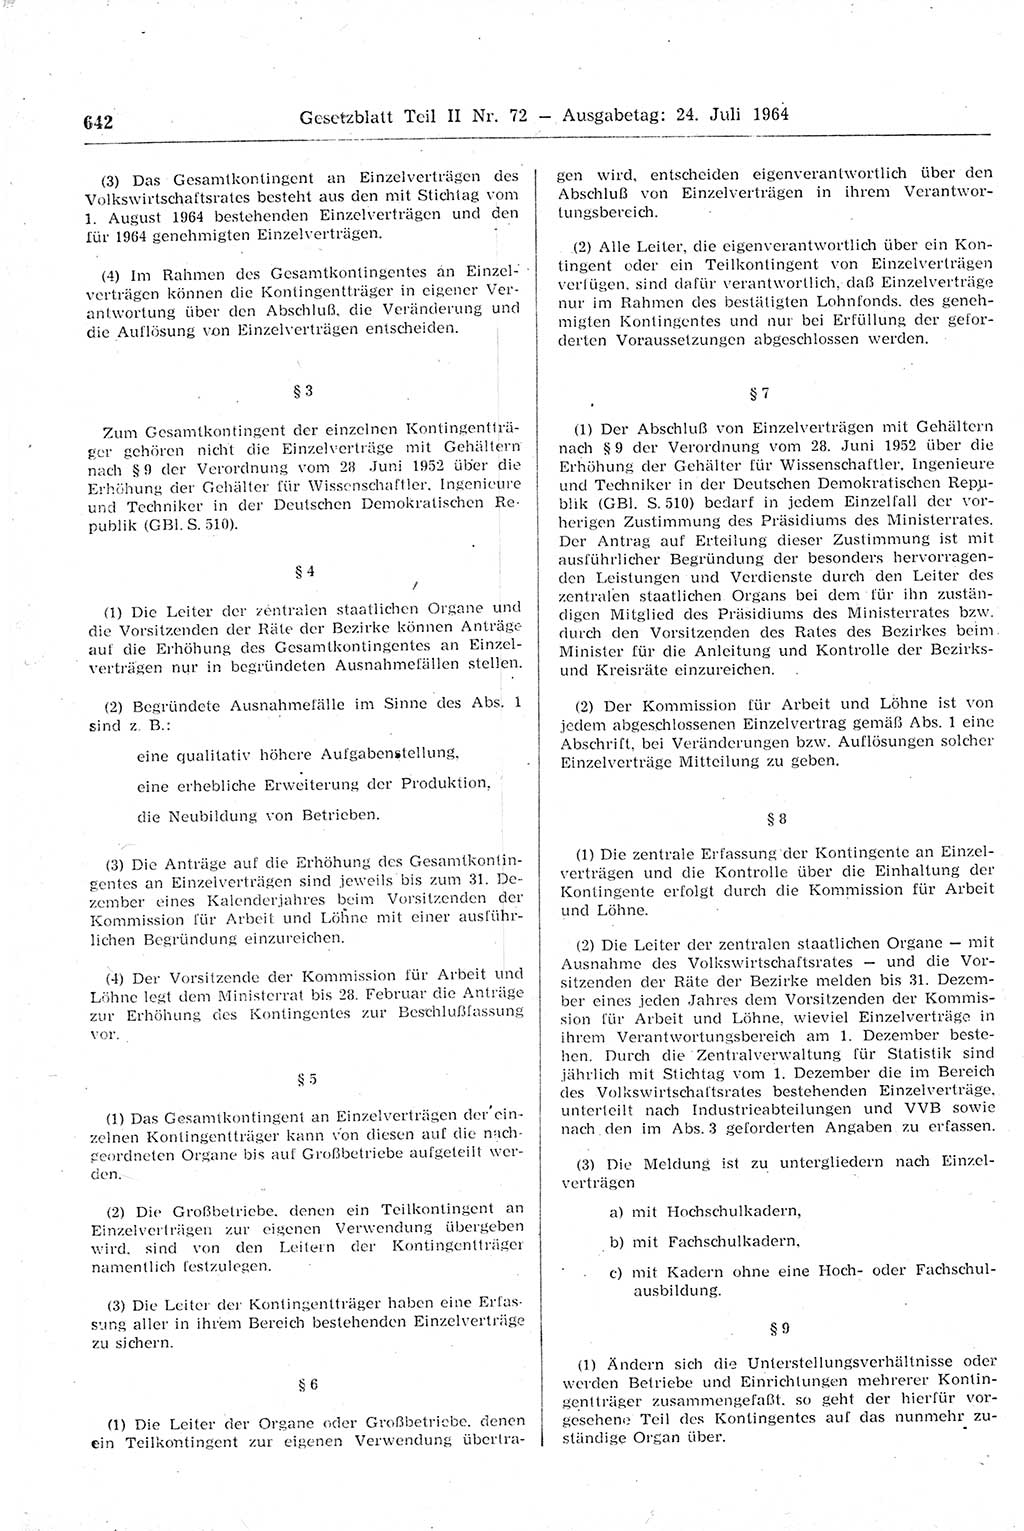 Gesetzblatt (GBl.) der Deutschen Demokratischen Republik (DDR) Teil ⅠⅠ 1964, Seite 642 (GBl. DDR ⅠⅠ 1964, S. 642)